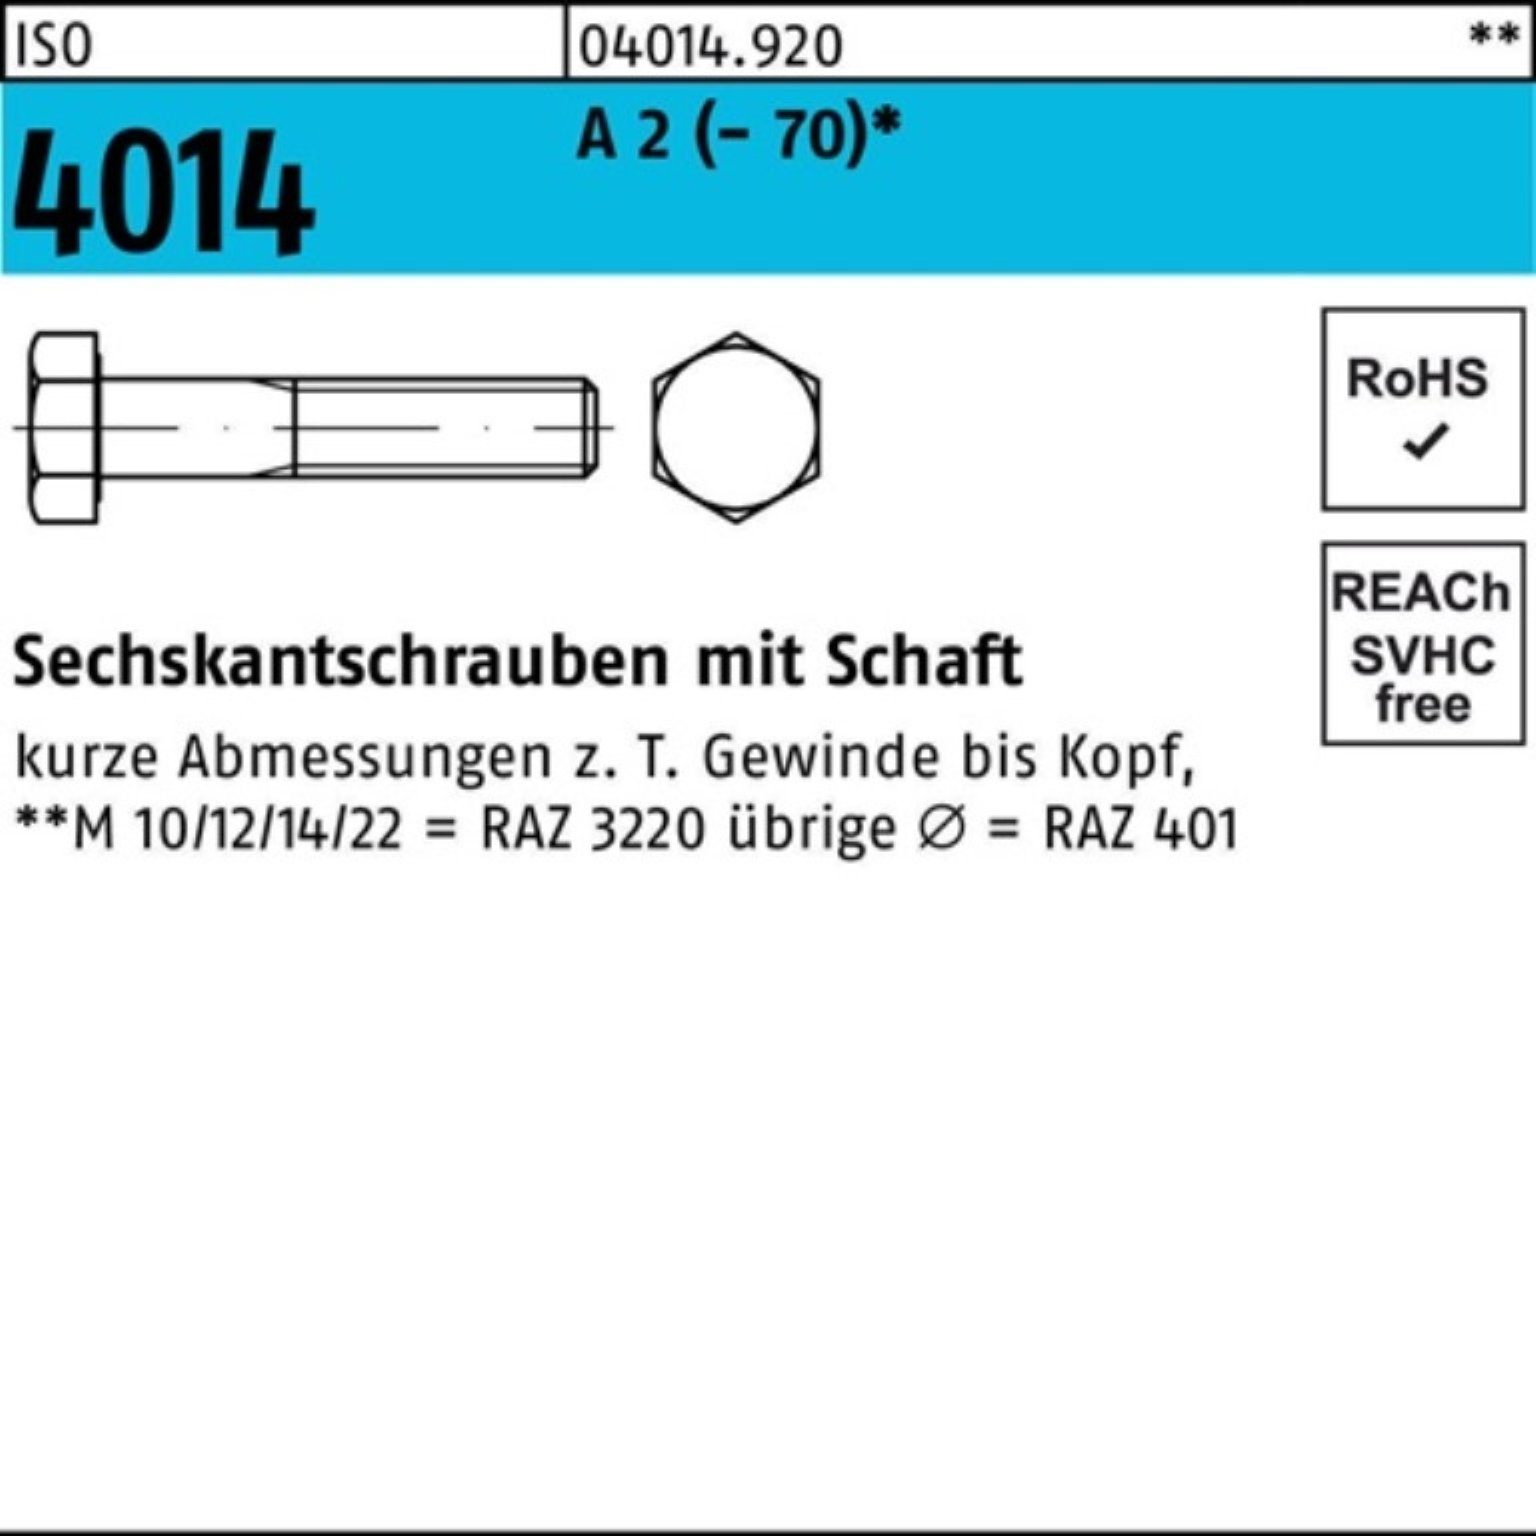 Bufab Sechskantschraube 100er Pack ISO 1 (70) Sechskantschraube M24x 2 4014 Schaft A St 110